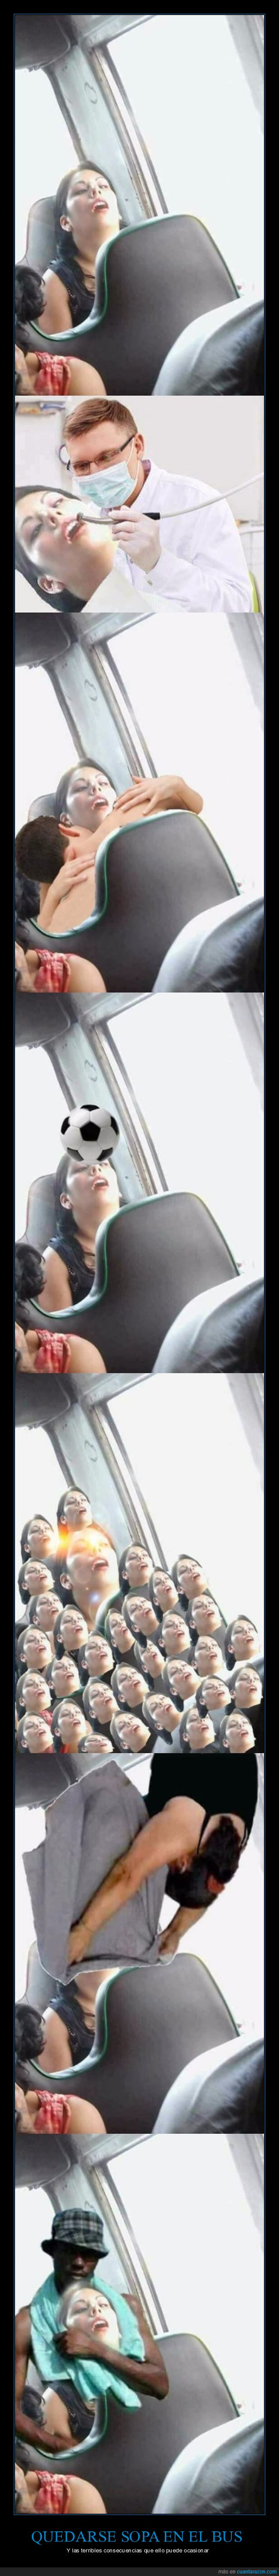 autobus,bus,chops,dormida,dormirse,photoshop